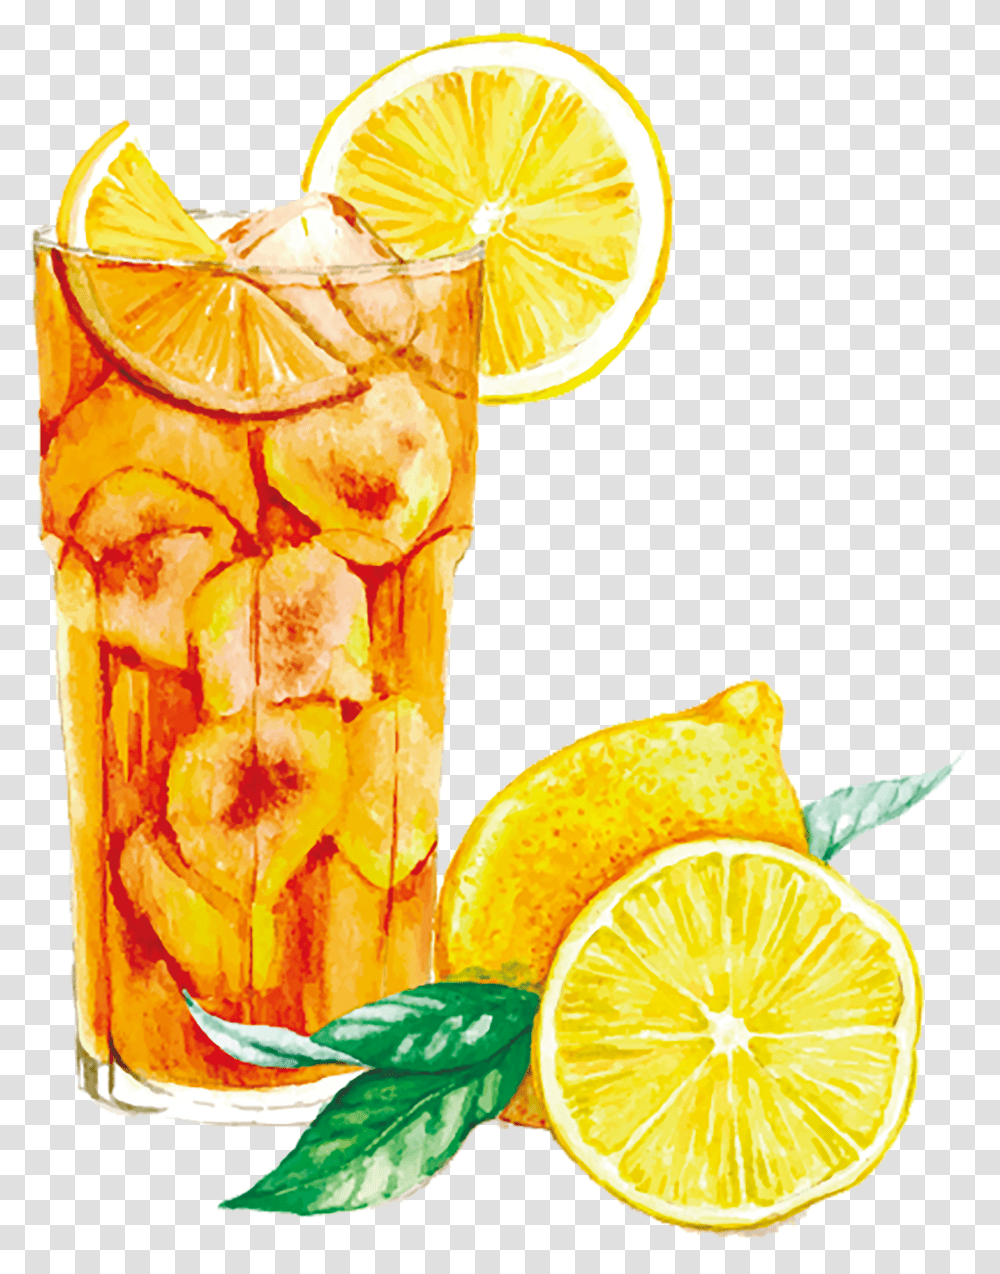 Watercolor Margarita Free Stock Lemon And Orange Clipart, Lemonade, Beverage, Drink, Citrus Fruit Transparent Png